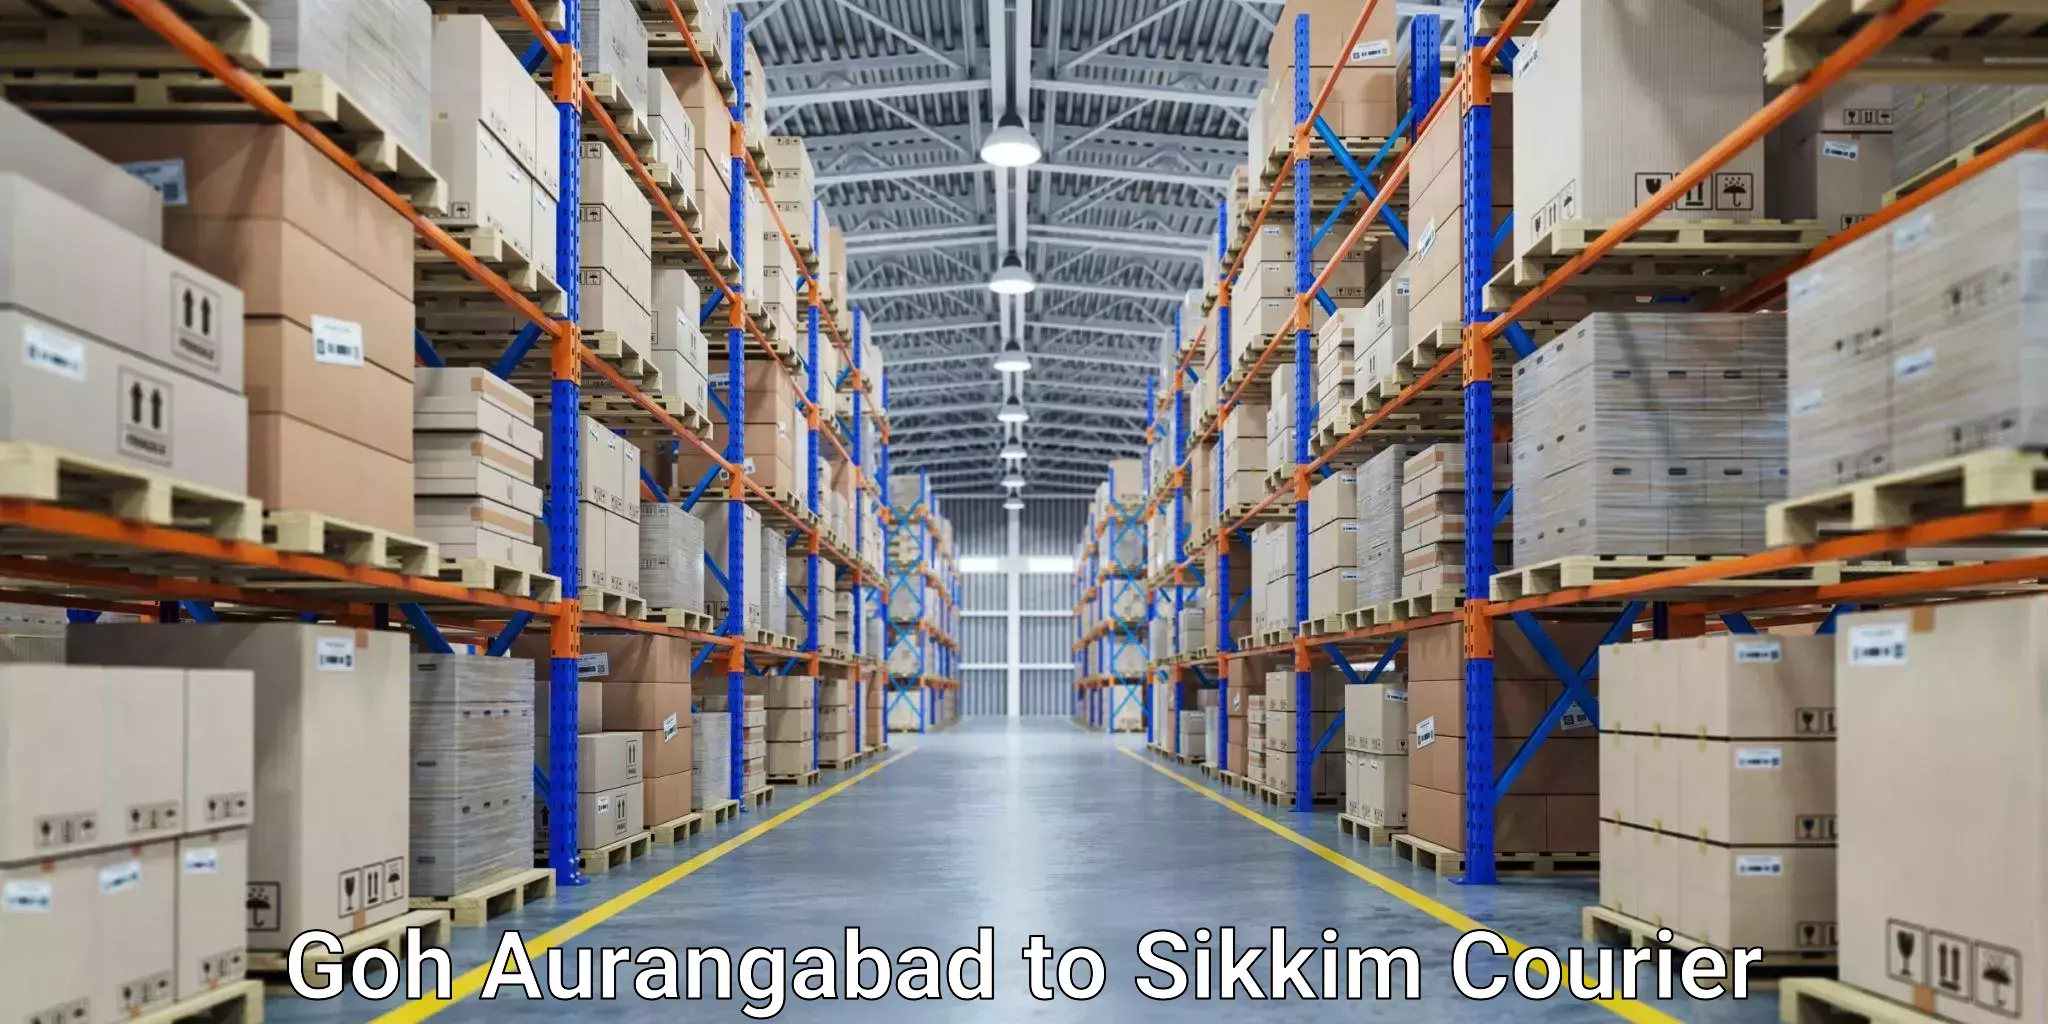 Expedited shipping methods Goh Aurangabad to Sikkim